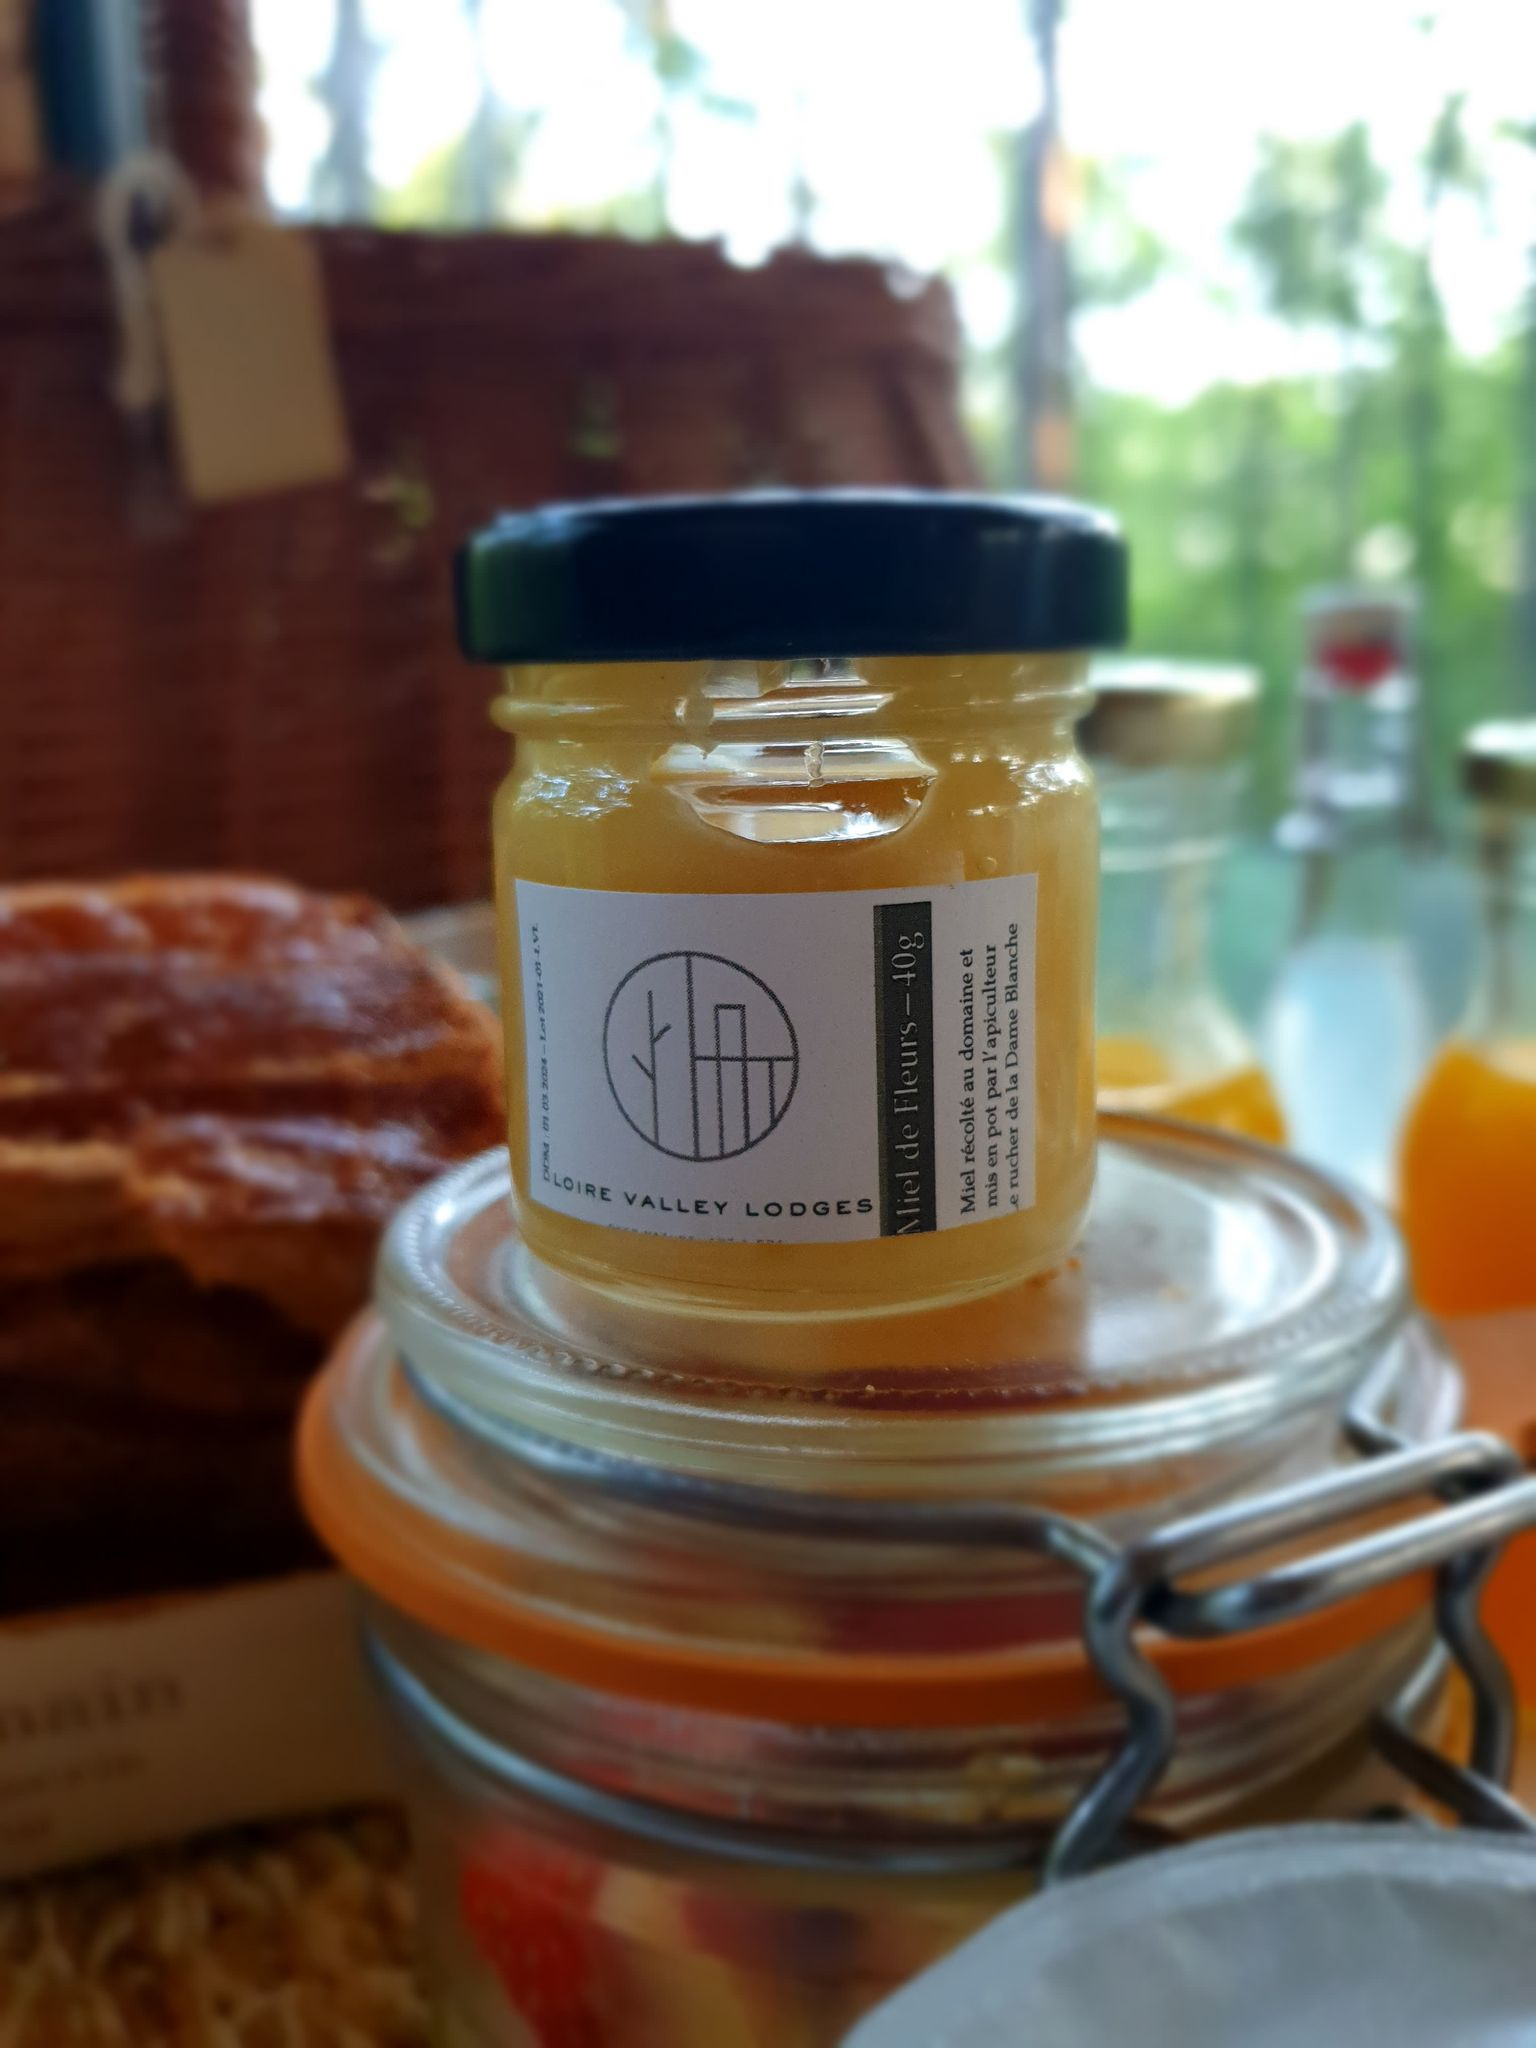 Le miel de Loire Valley Lodges produit par les ruches installées grâce au rucher de la Dame Blanche